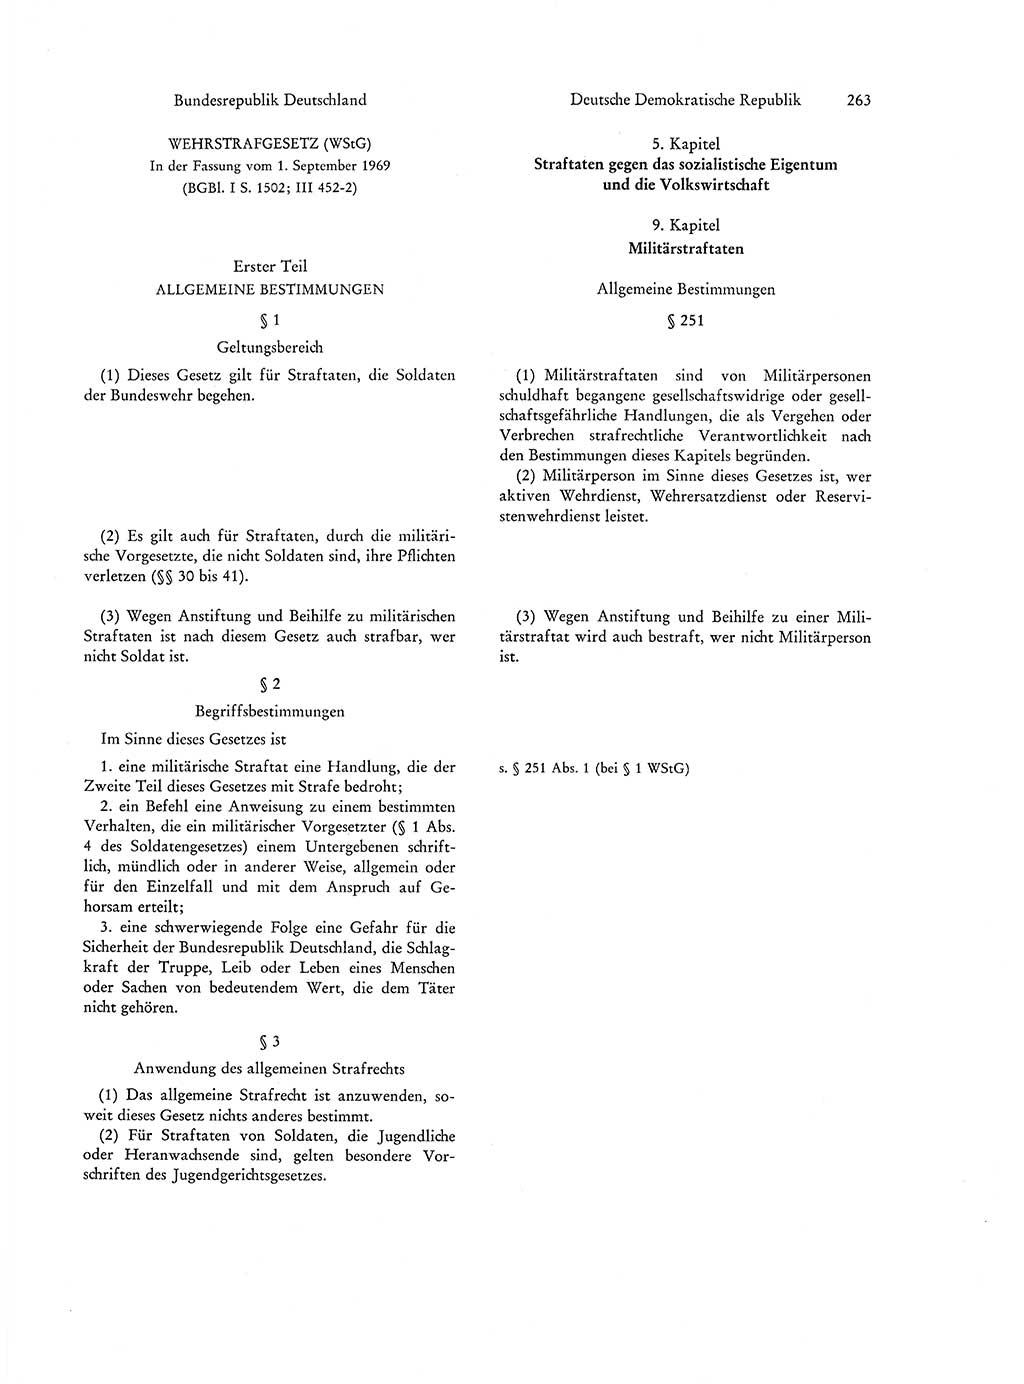 Strafgesetzgebung in Deutschland [Bundesrepublik Deutschland (BRD) und Deutsche Demokratische Republik (DDR)] 1972, Seite 263 (Str.-Ges. Dtl. StGB BRD DDR 1972, S. 263)